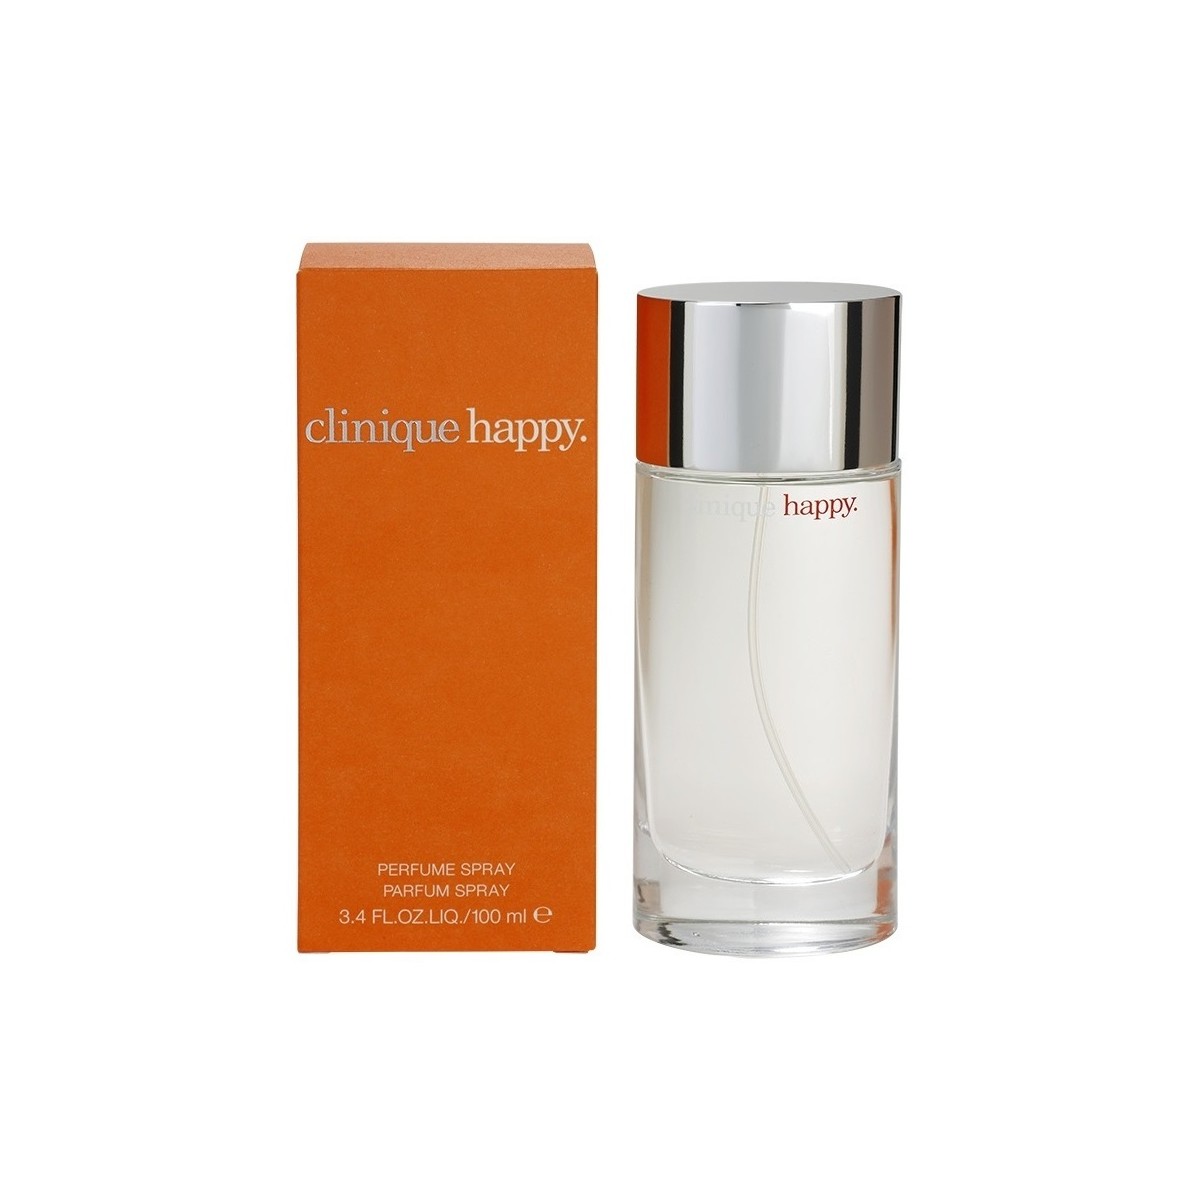 Bellezza Donna Eau de parfum Clinique Happy - acqua profumata - 100ml - vaporizzatore Happy - perfume - 100ml - spray